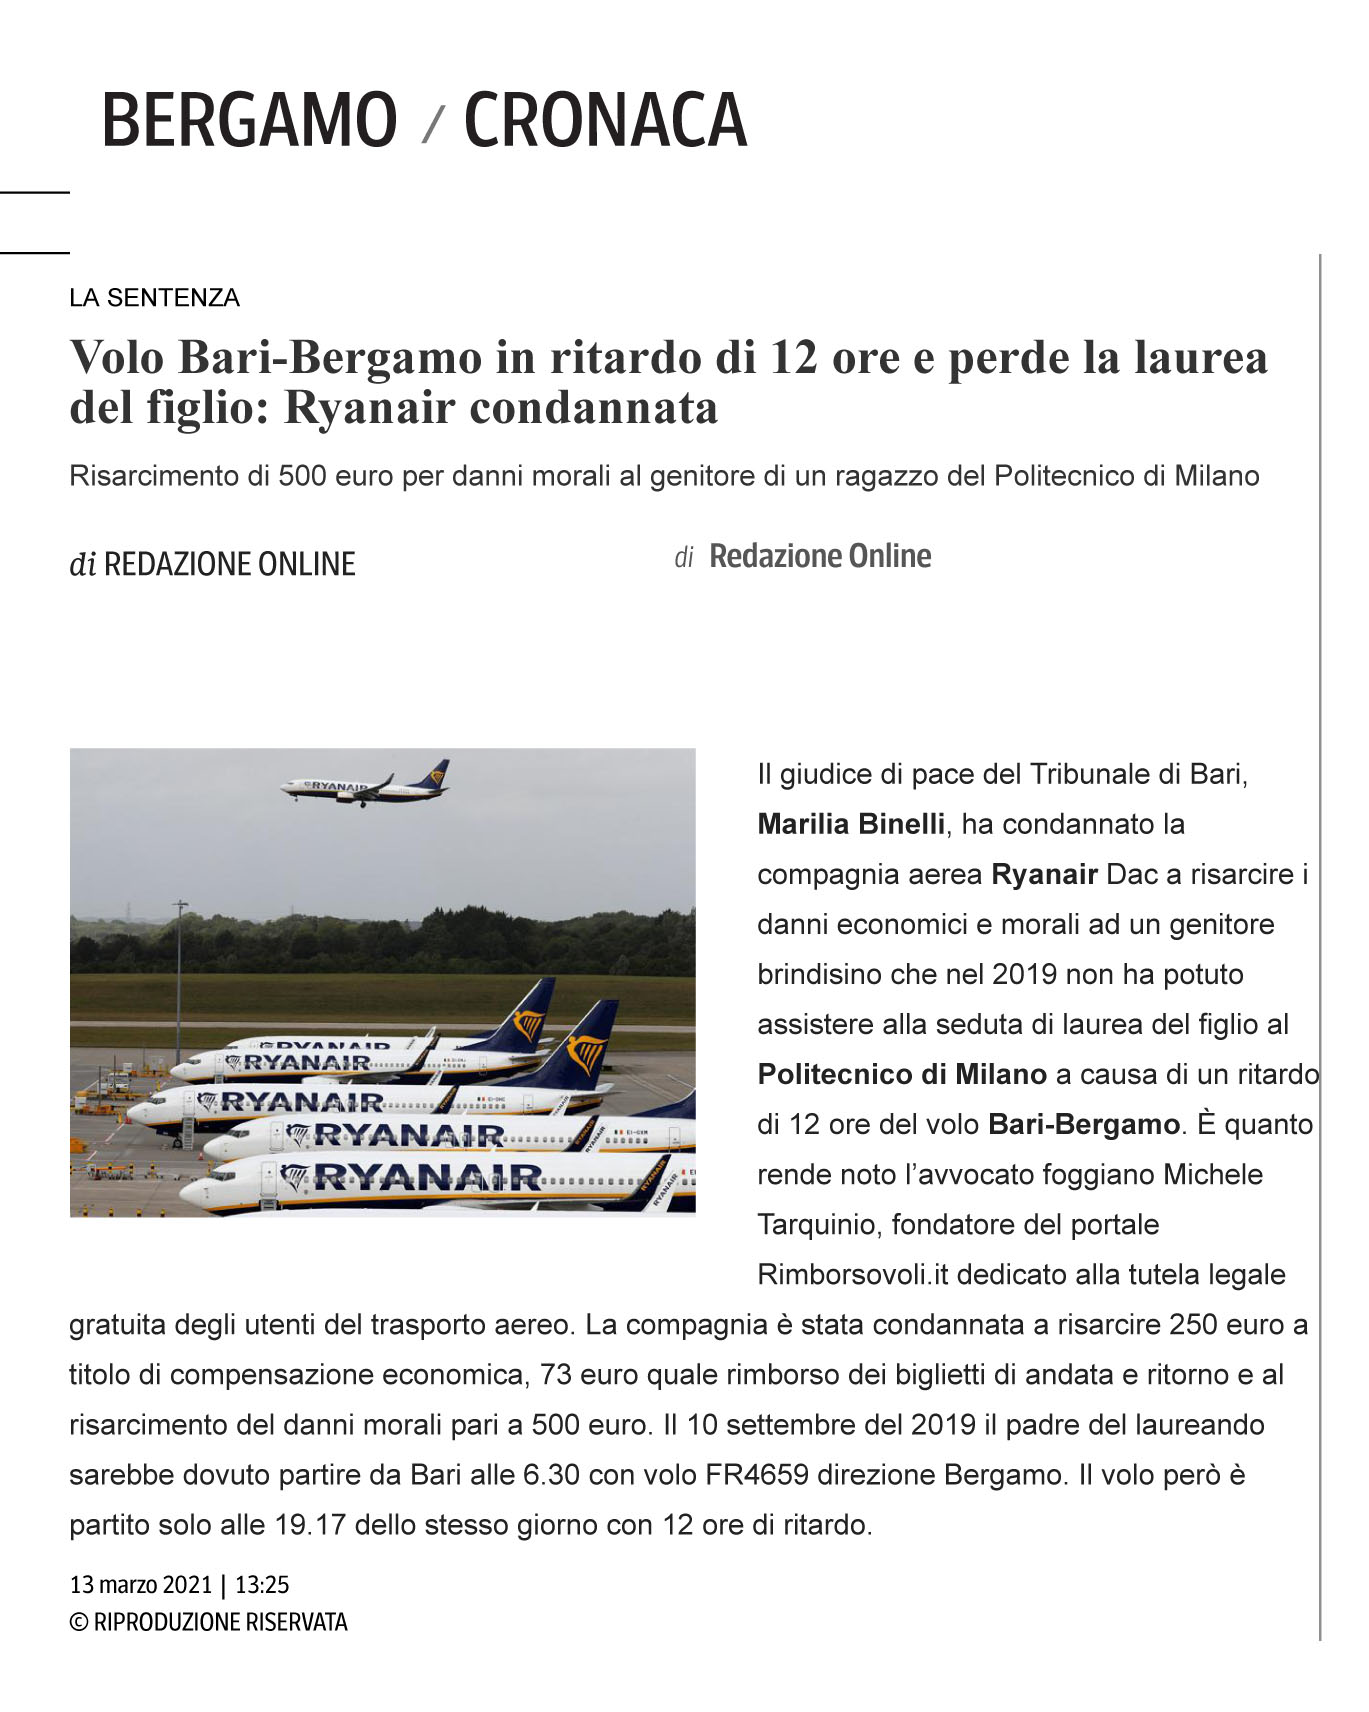 Volo Bari-Bergamo in ritardo di 12 ore e perde la laurea del figlio: Ryanair condannata